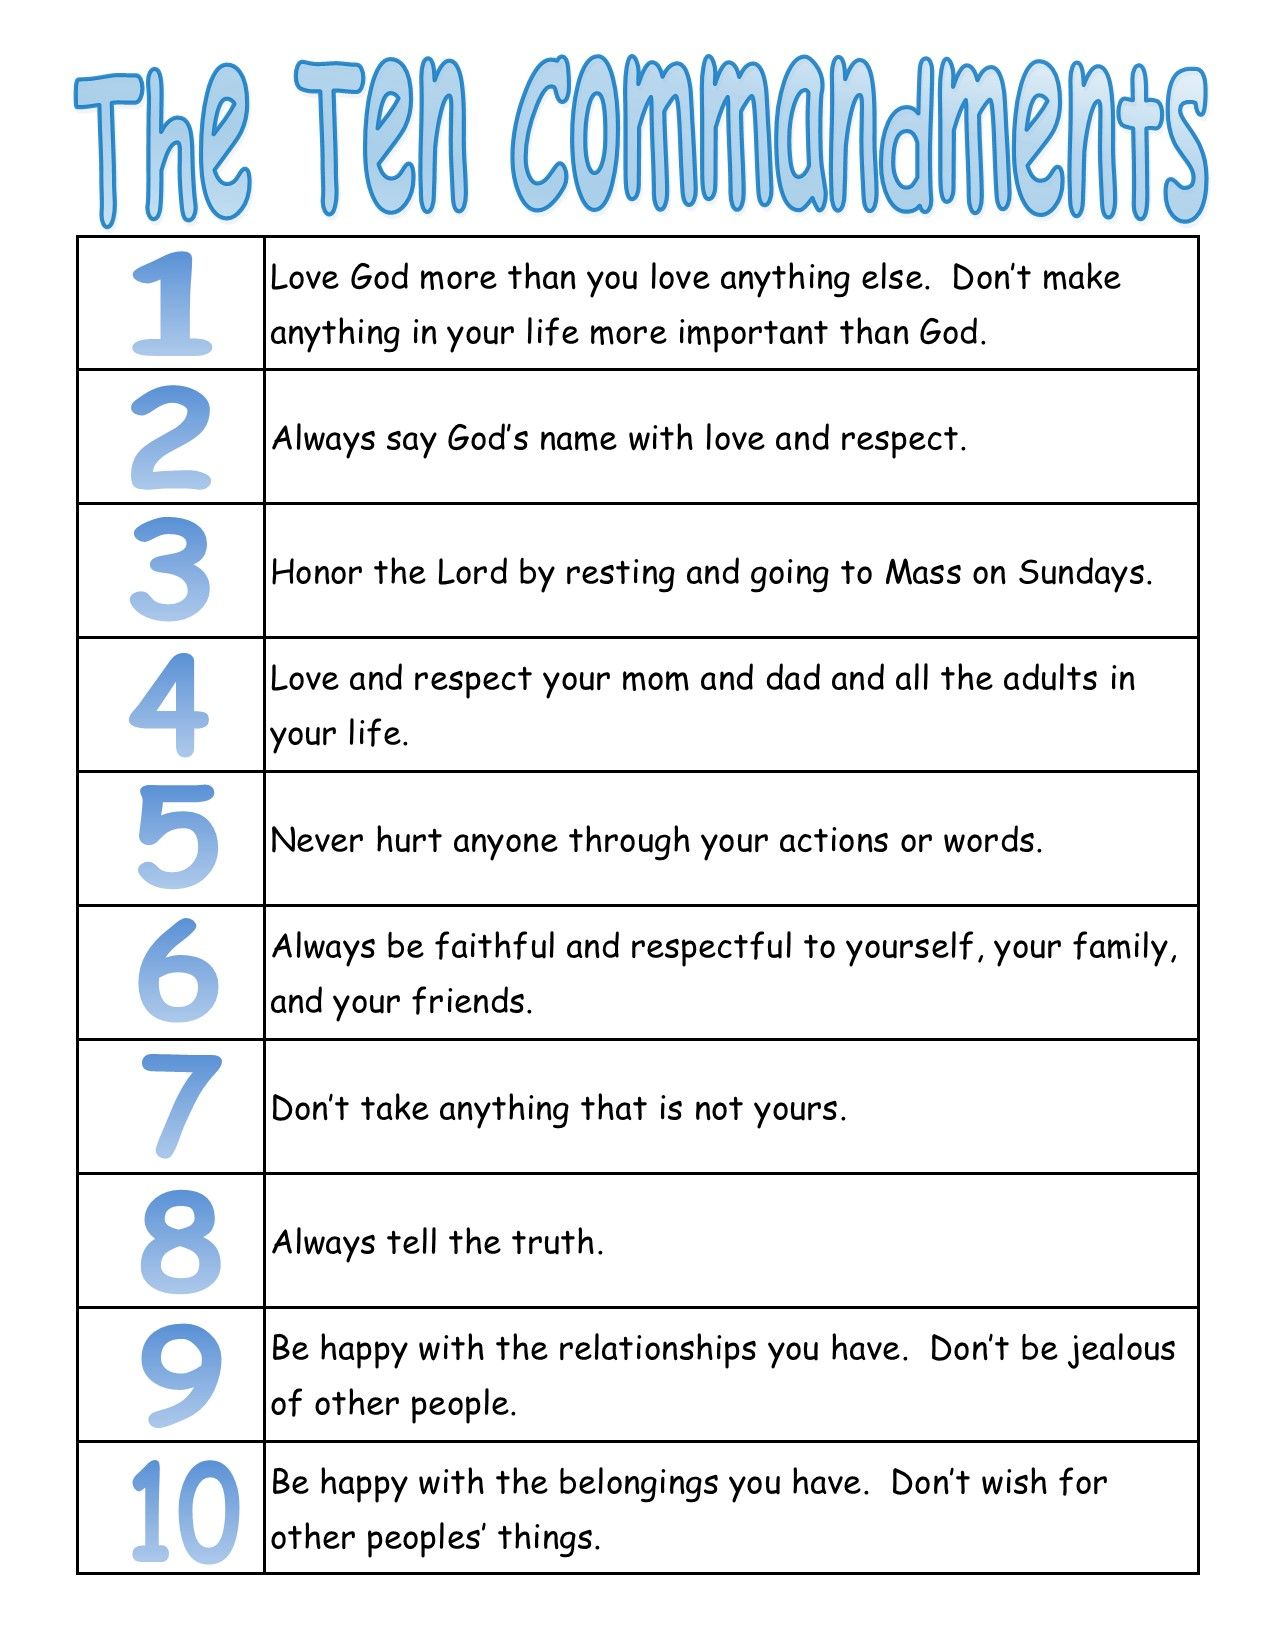 Ten commandments clipart meaning, Ten commandments meaning Transparent